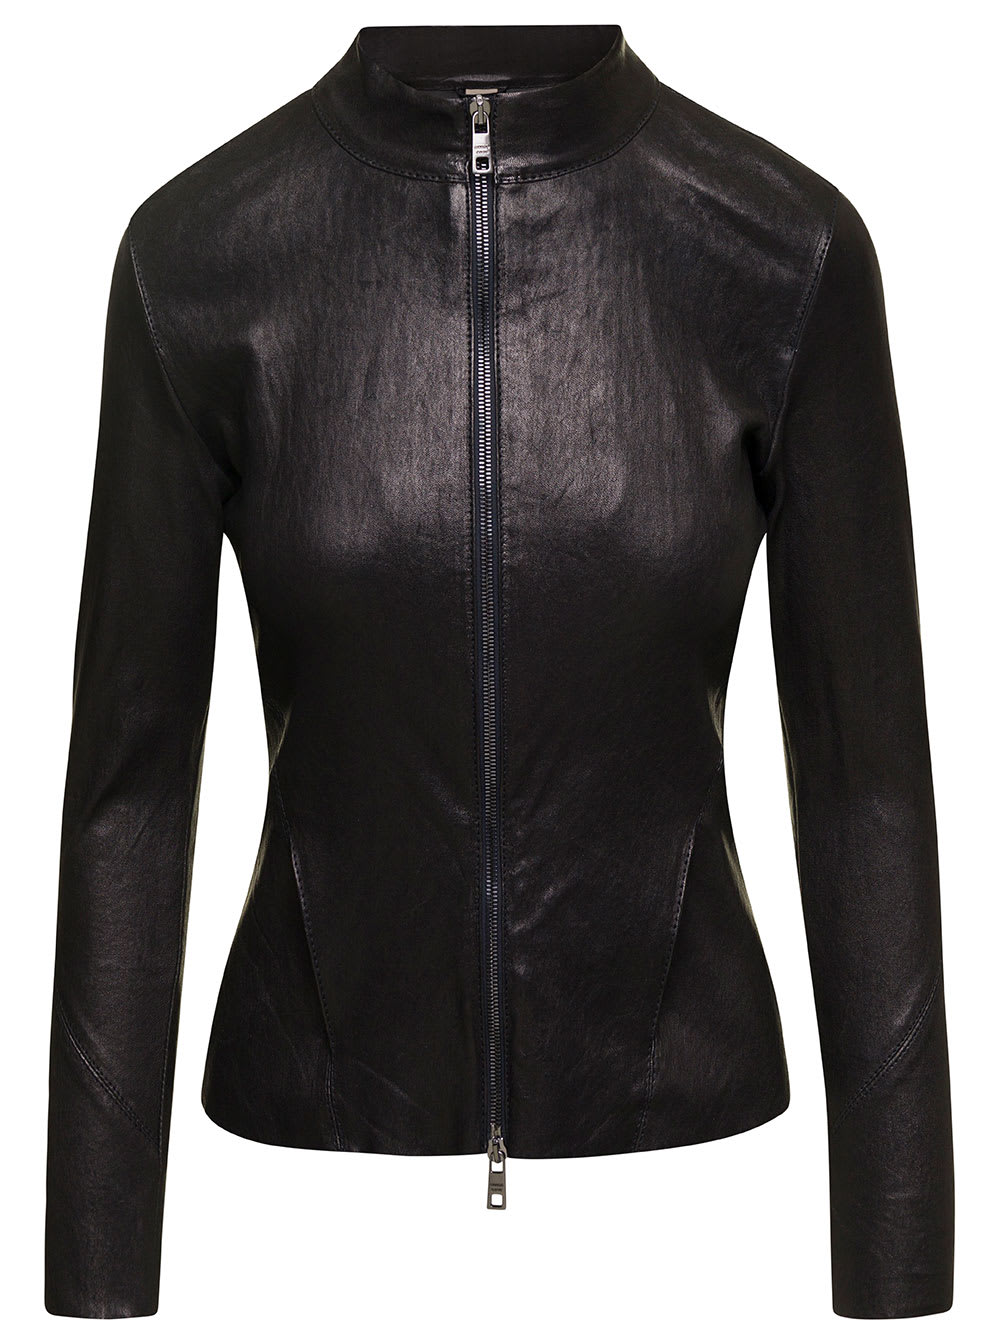 Giorgio Brato Black Band Collar Biker Jacket In Lamb Leather Woman